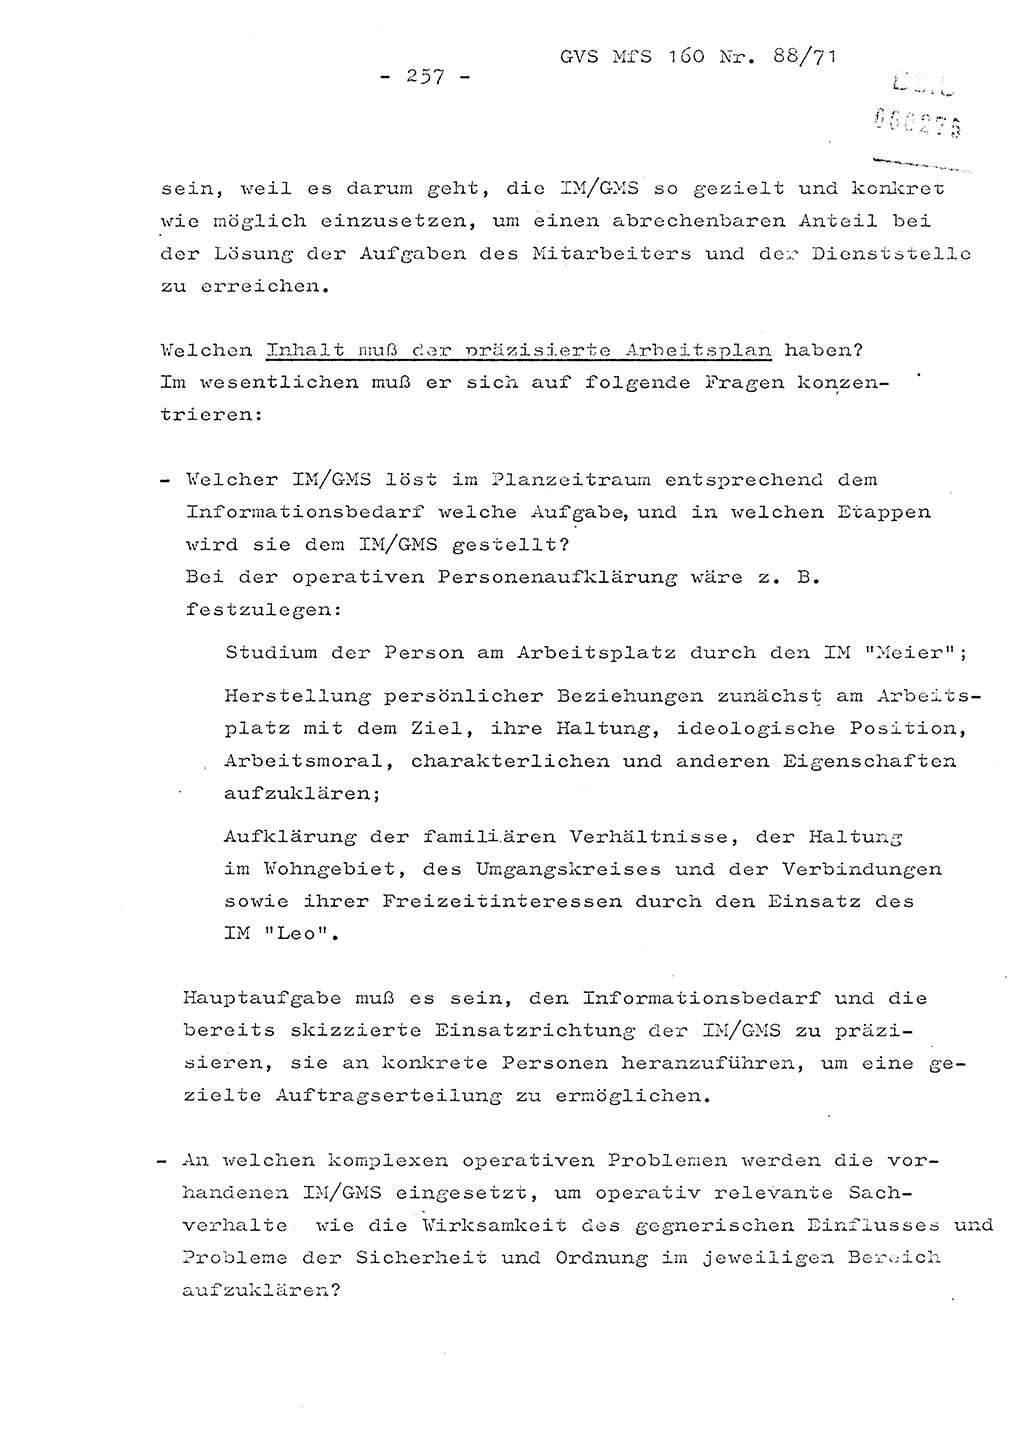 Dissertation Oberstleutnant Josef Schwarz (BV Schwerin), Major Fritz Amm (JHS), Hauptmann Peter Gräßler (JHS), Ministerium für Staatssicherheit (MfS) [Deutsche Demokratische Republik (DDR)], Juristische Hochschule (JHS), Geheime Verschlußsache (GVS) 160-88/71, Potsdam 1972, Seite 257 (Diss. MfS DDR JHS GVS 160-88/71 1972, S. 257)